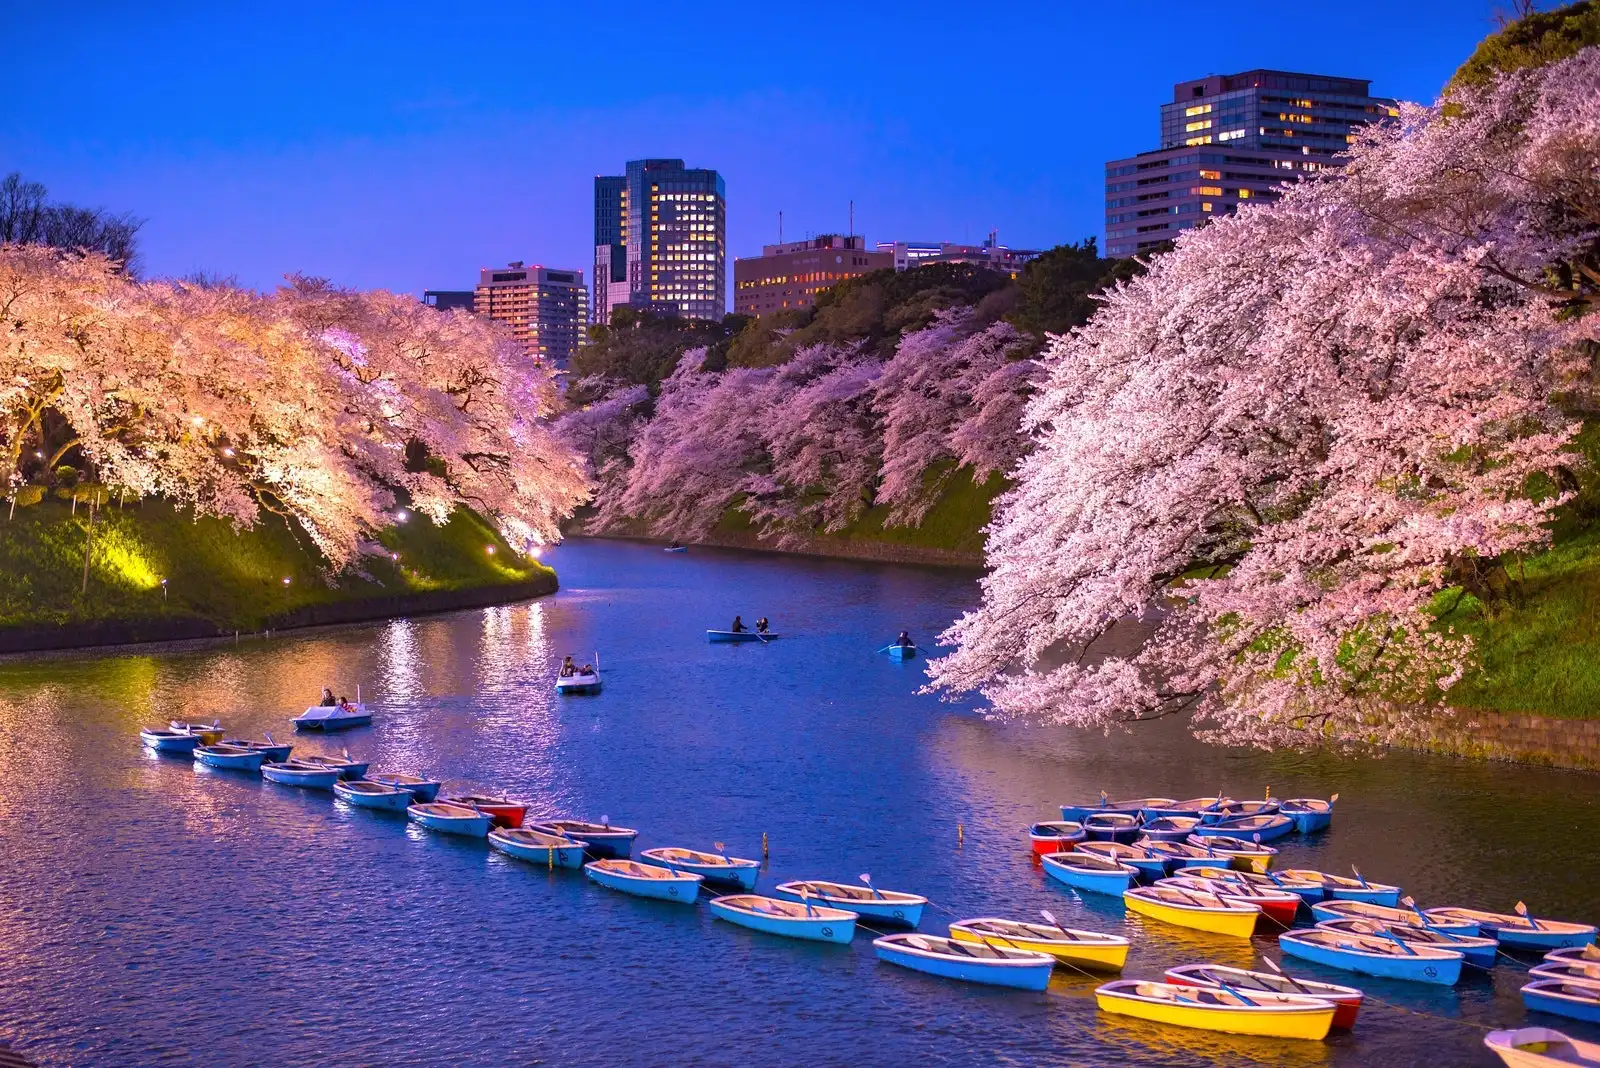 千鳥ヶ淵の 千代田のさくらまつり は130万人が訪れる東京都内屈指のお花見スポット ライトアップされた綺麗な桜は一度は訪れたい絶景スポット 観光 旅行 クールジャパンビデオ 日本の観光 旅行 グルメ 面白情報をまとめた動画キュレーションサイト Cool